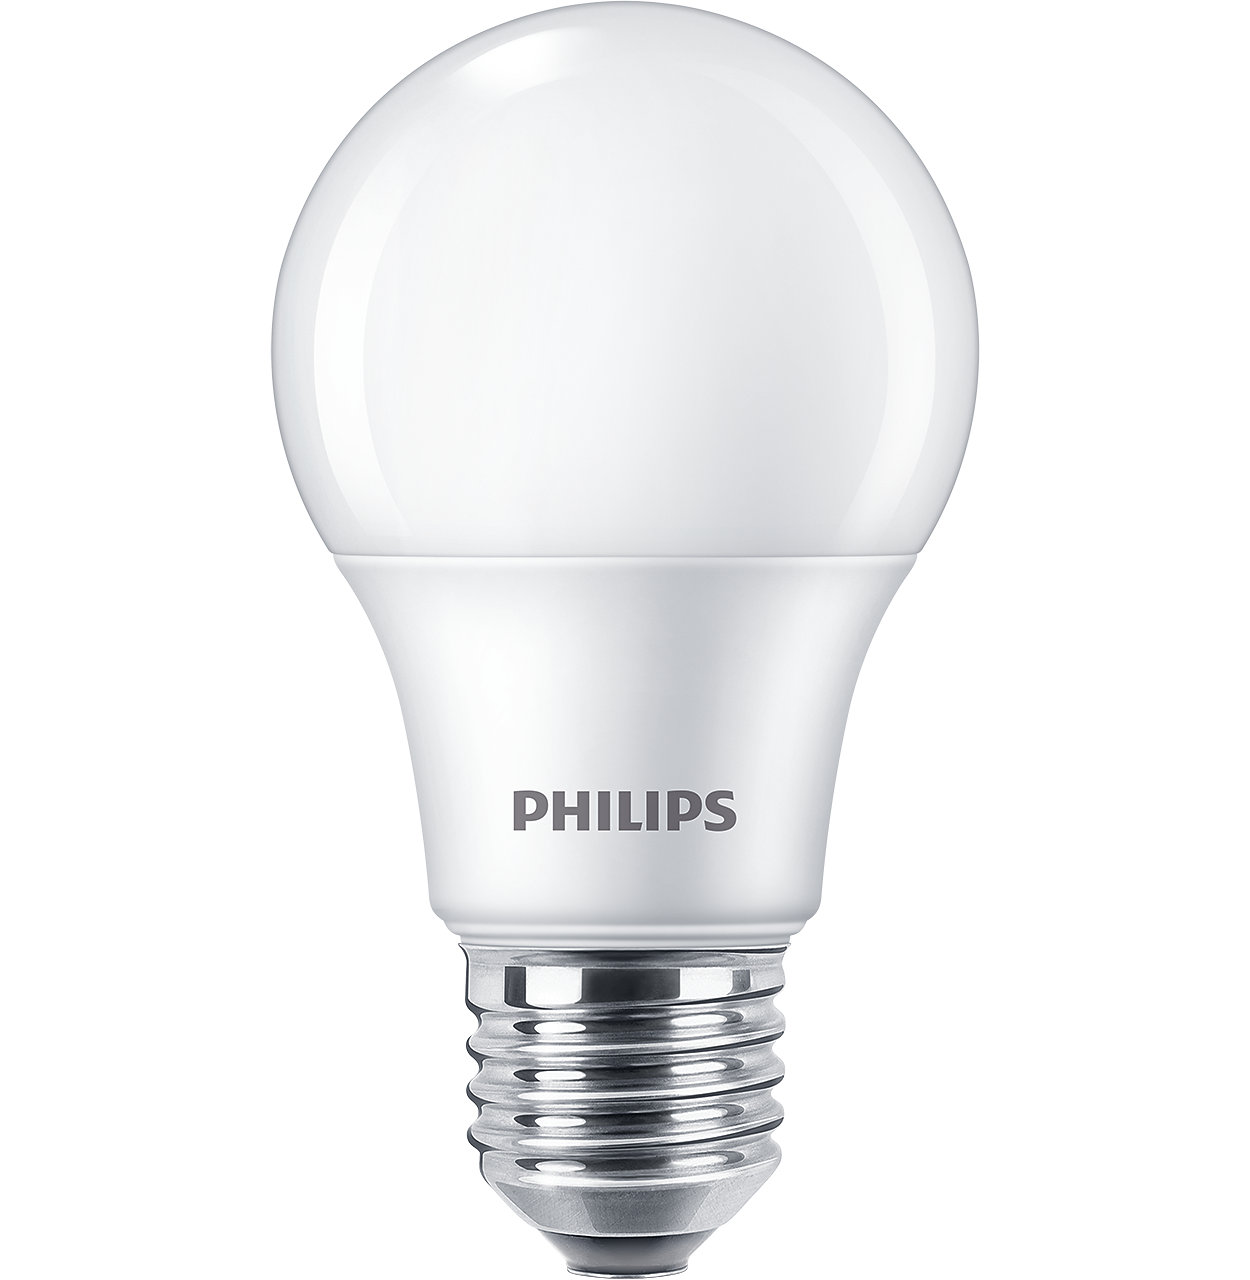 Bóng đèn LED bulb hiện đại cho ngôi nhà bạn